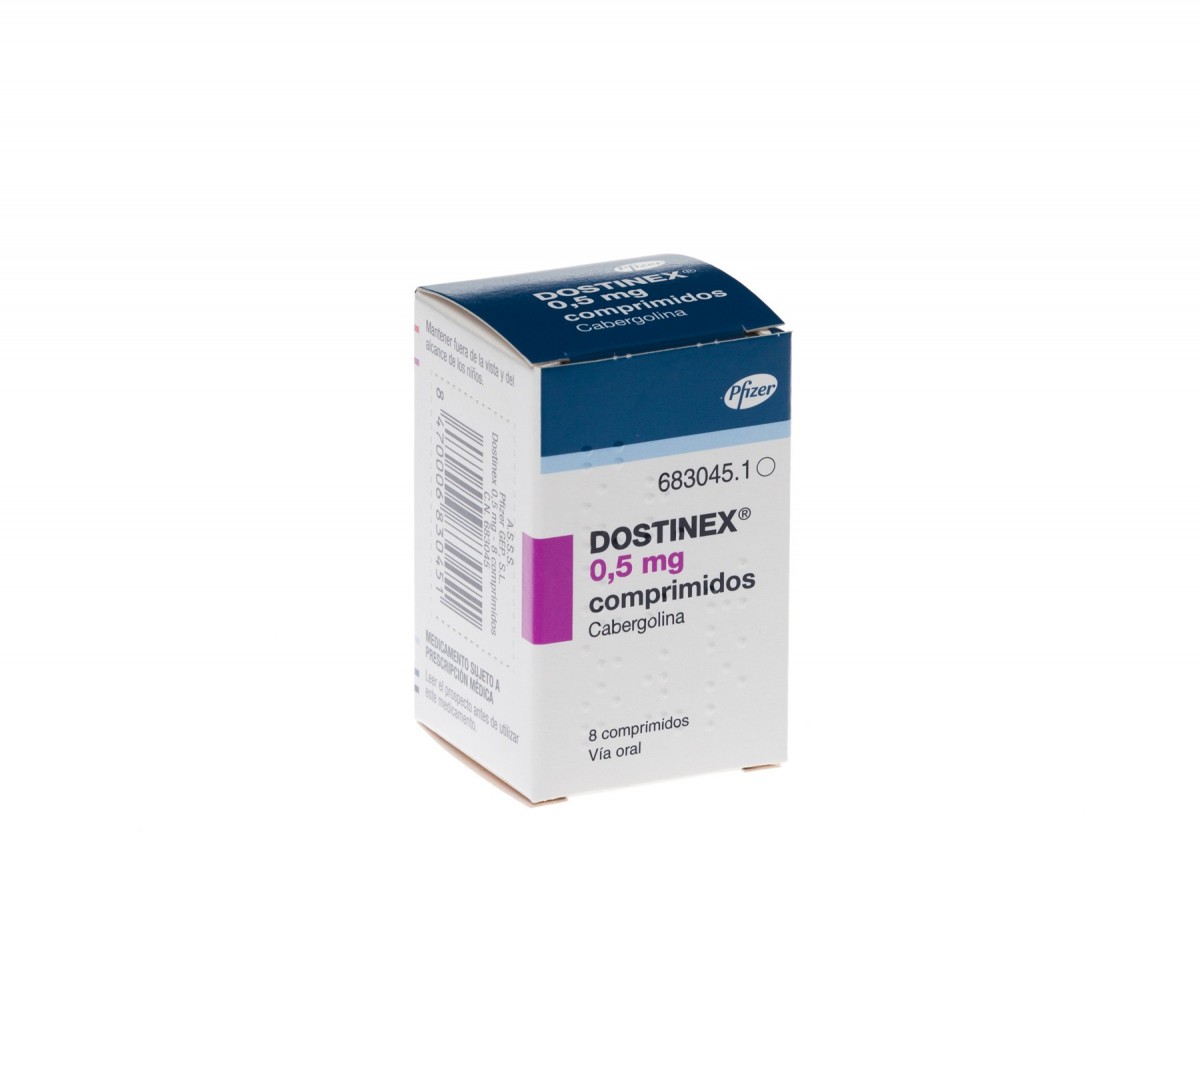 DOSTINEX 0,5 mg COMPRIMIDOS, 2 comprimidos fotografía del envase.